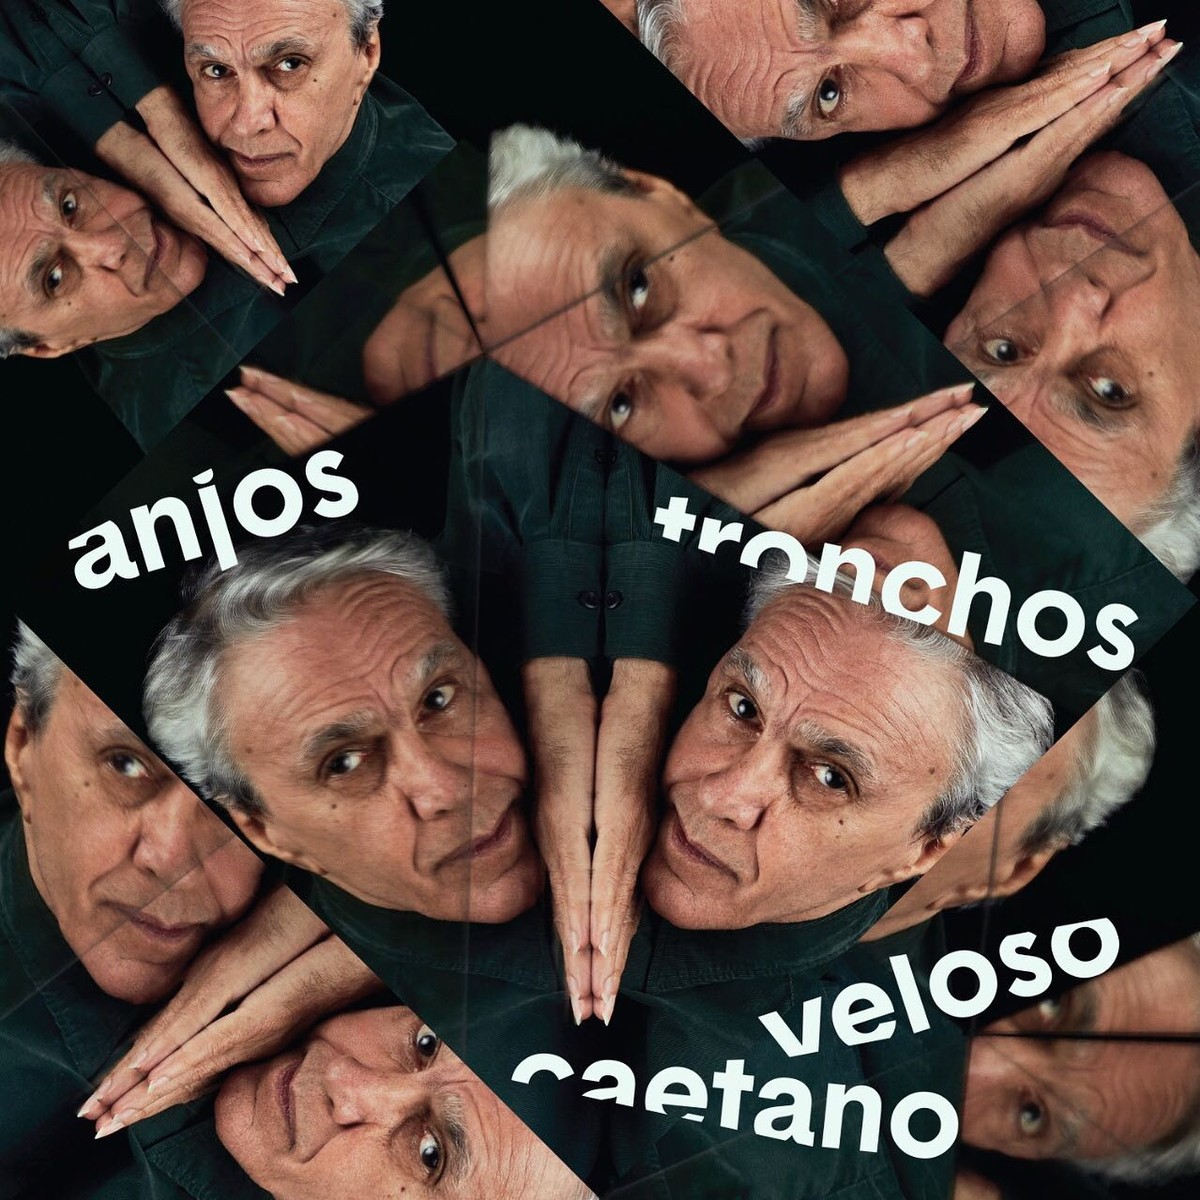 Caetano Veloso revela a capa de ‘Anjos tronchos’, single com ‘canção extremamente densa’ | Blog do Mauro Ferreira